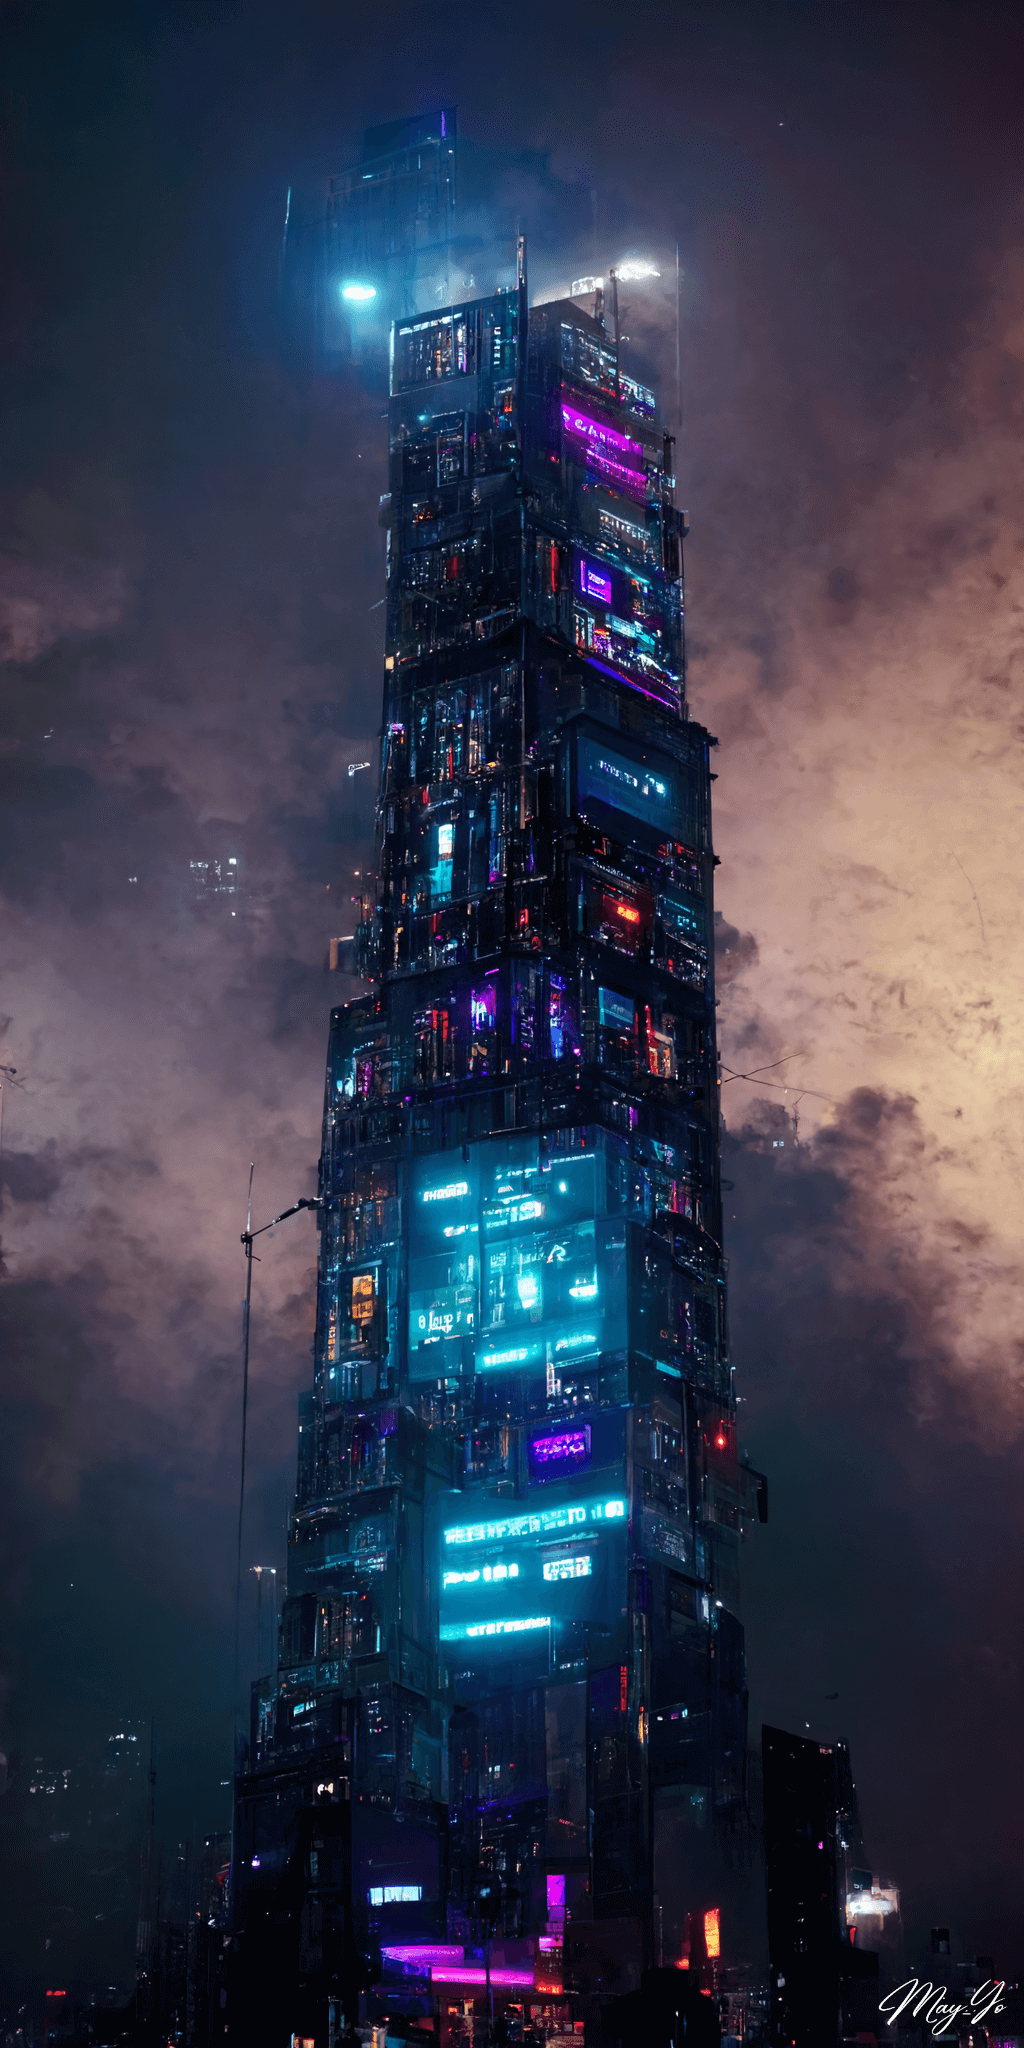 サイバーパンクな夜景に妖しく輝く近未来な高層ビルの壁紙イラスト サイバーパンクシティのビルをイメージした待受 AIイラスト待受 縦長画像 cyberpunk skyscraper illustration neon building